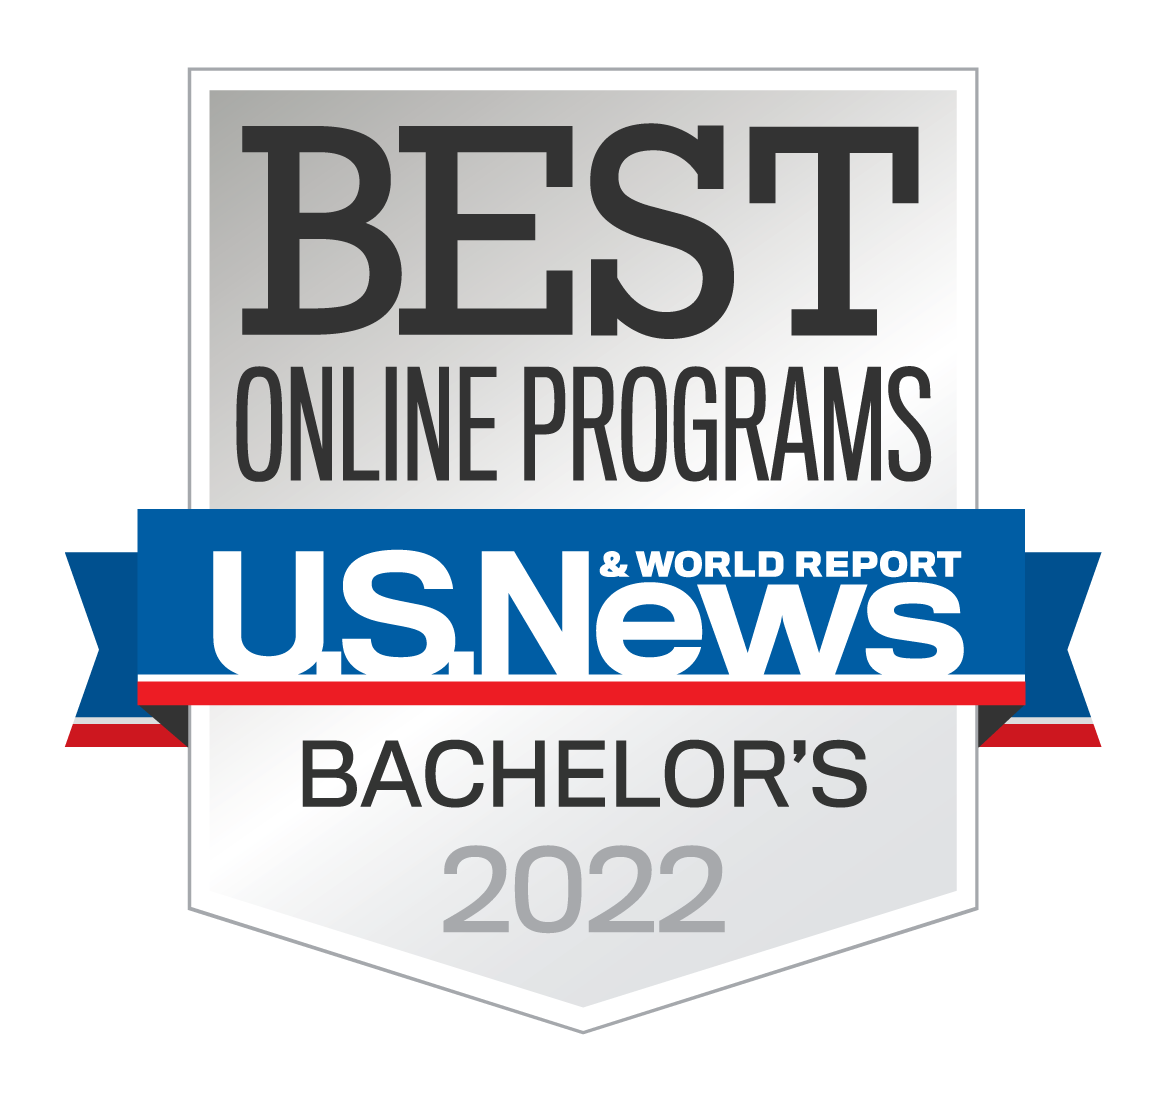 Best Online Programs Bachelor's 2022